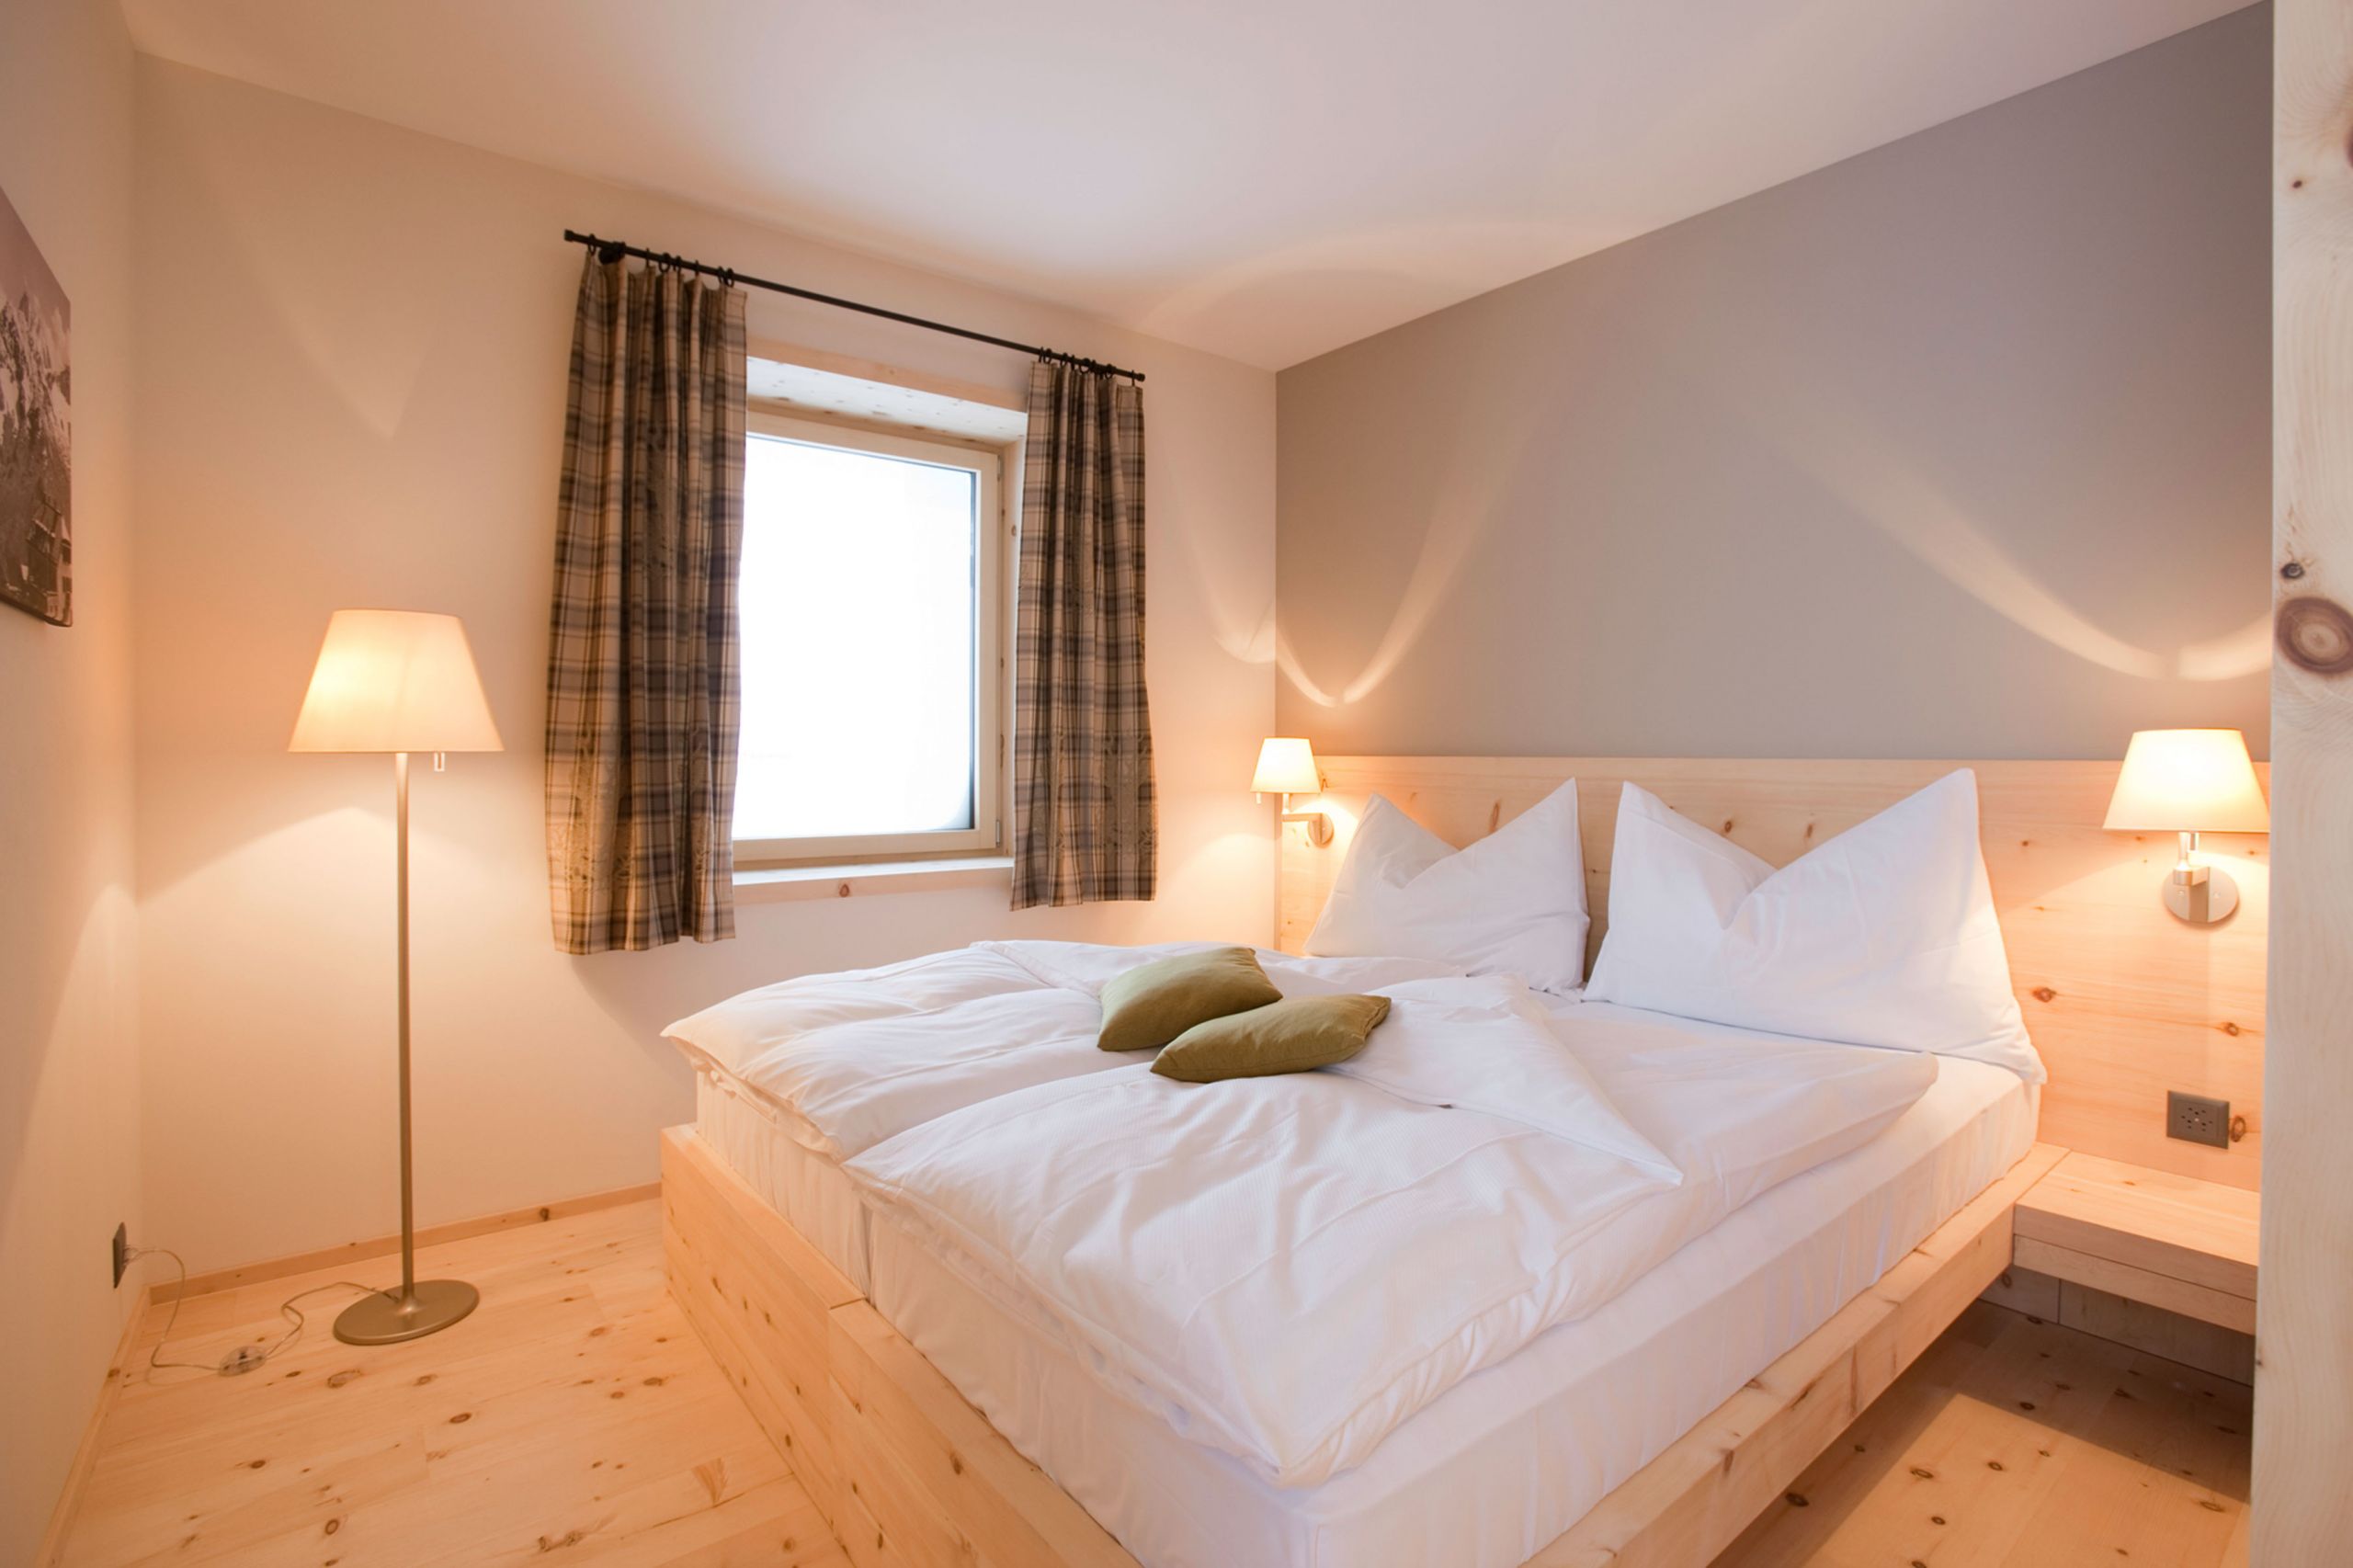 Floor Lights For Bedroom
 Tips to Get Your Bedroom Lighting Right